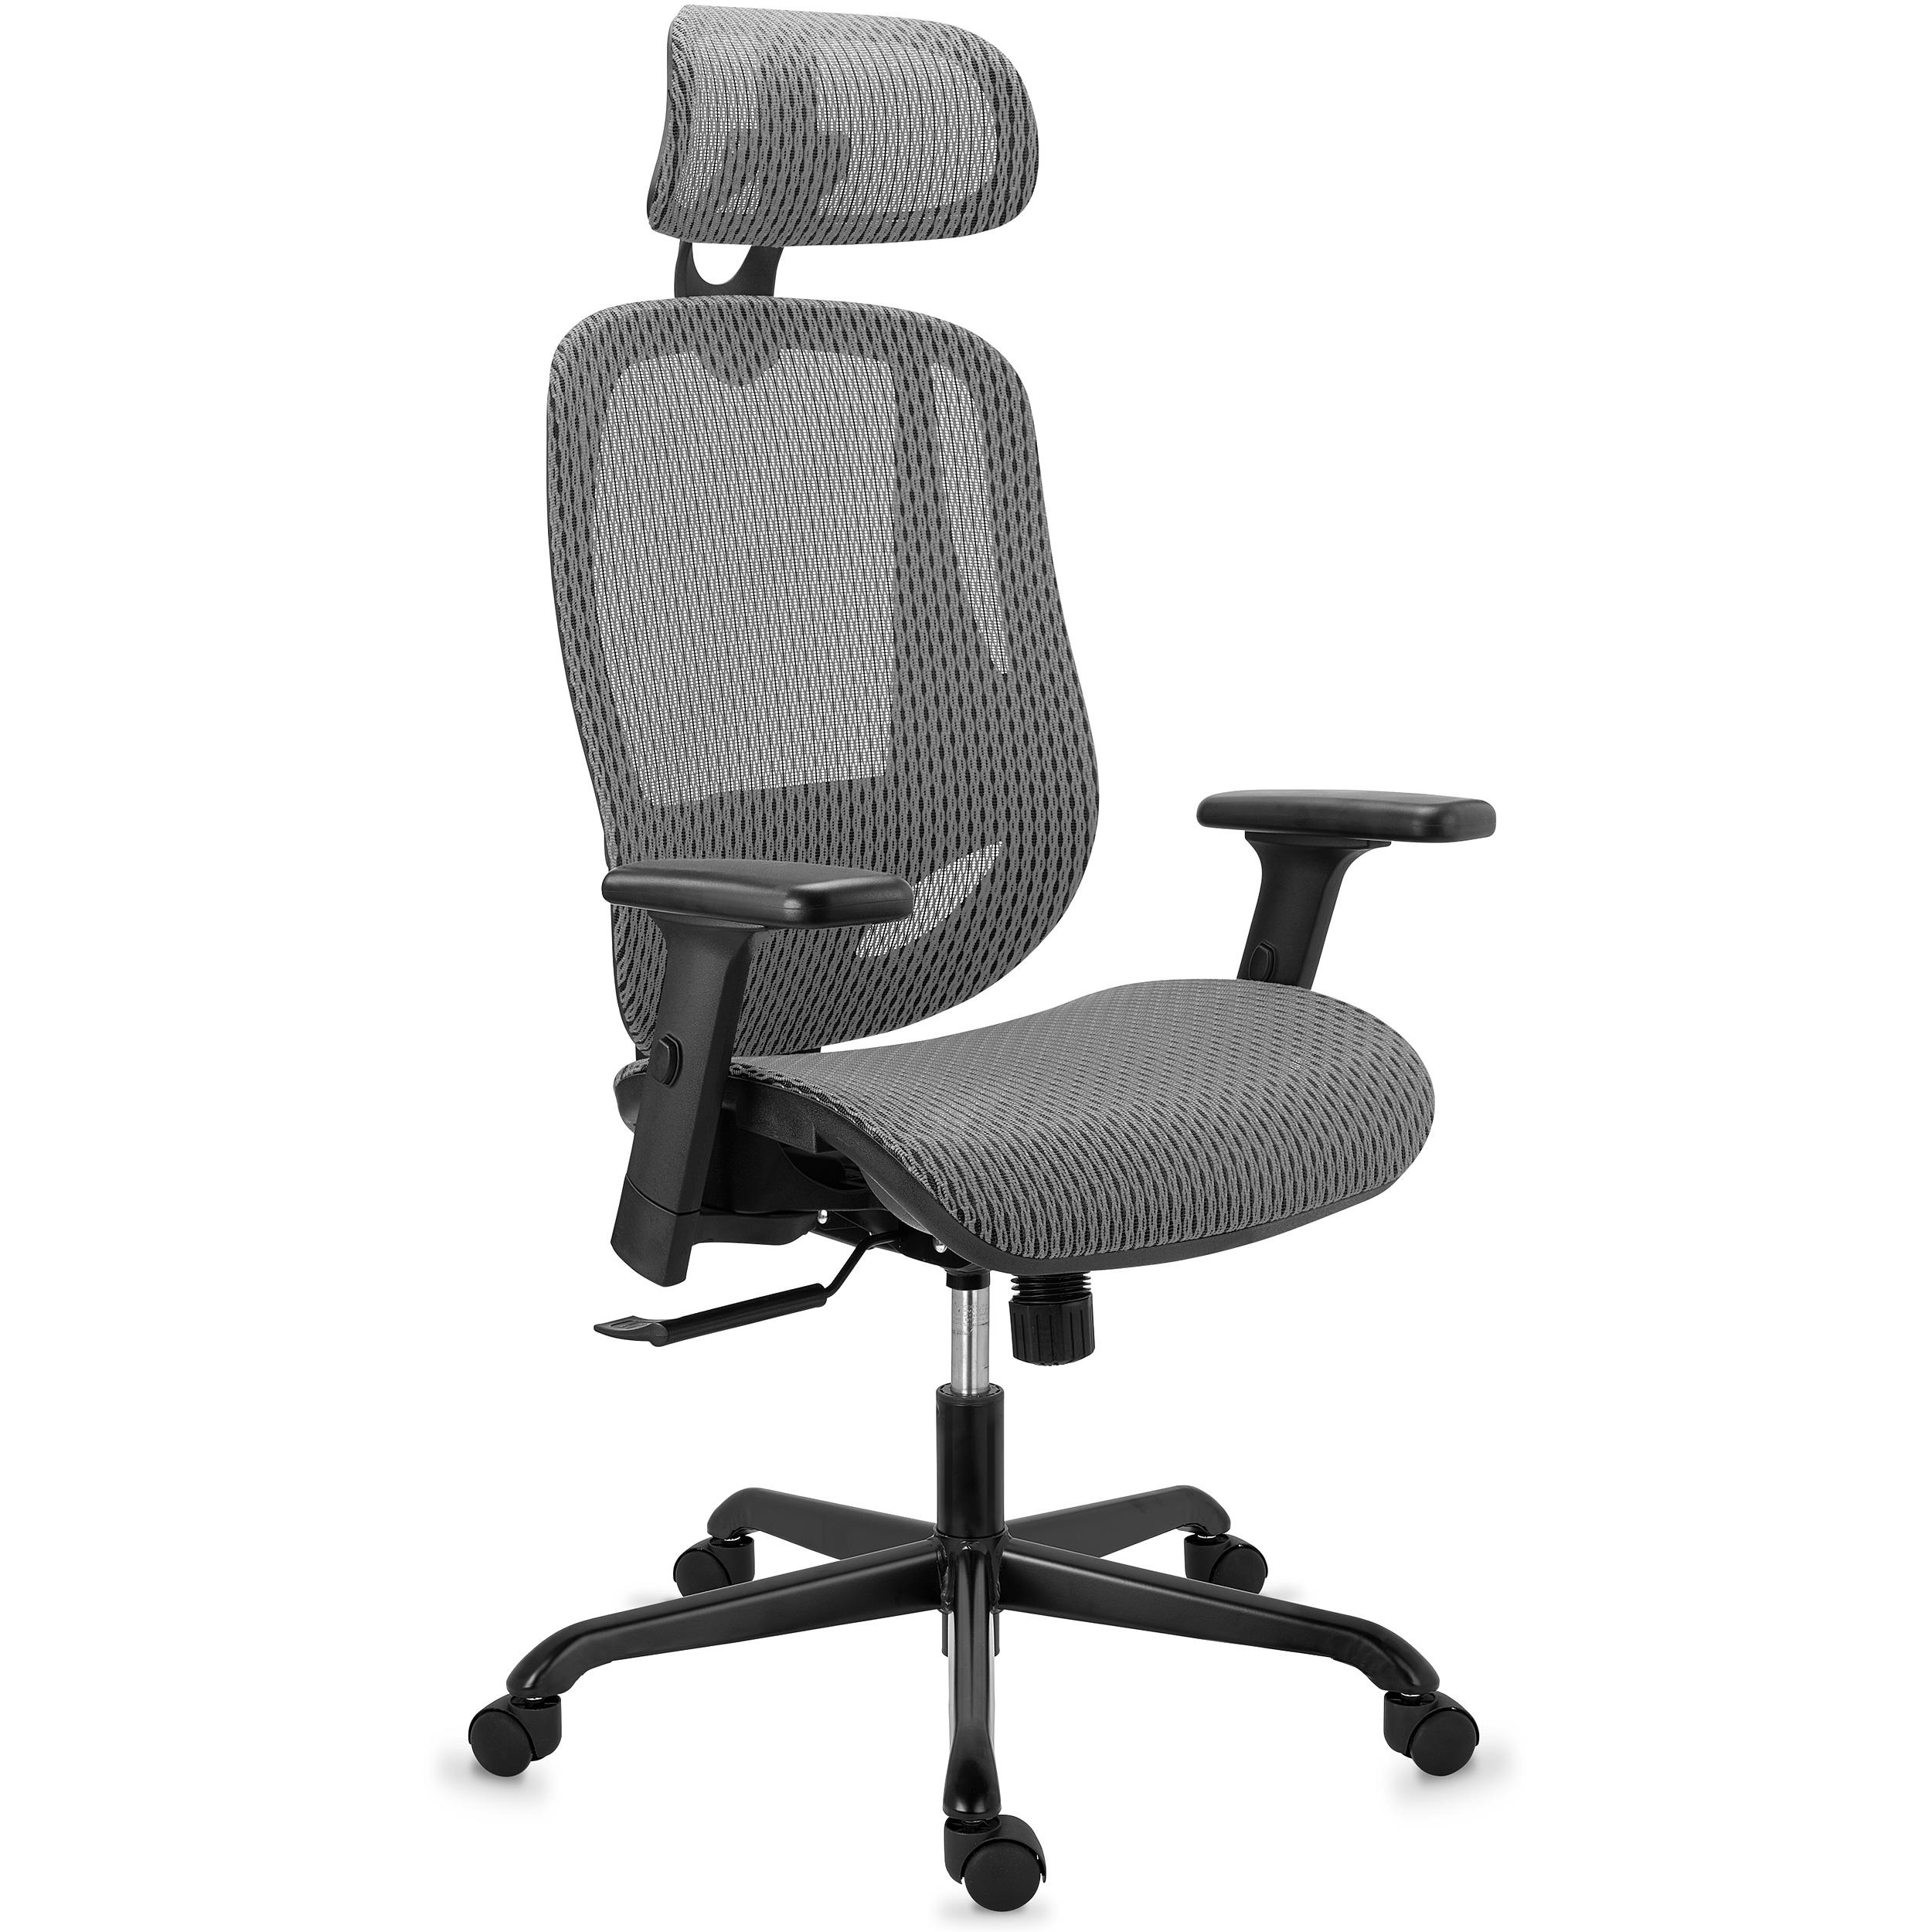 Ergonomischer Bürostuhl NOVA, Sehr komfortabel und regulierbar; Beste Qualität und Design, Netzstoff, Farbe Grau